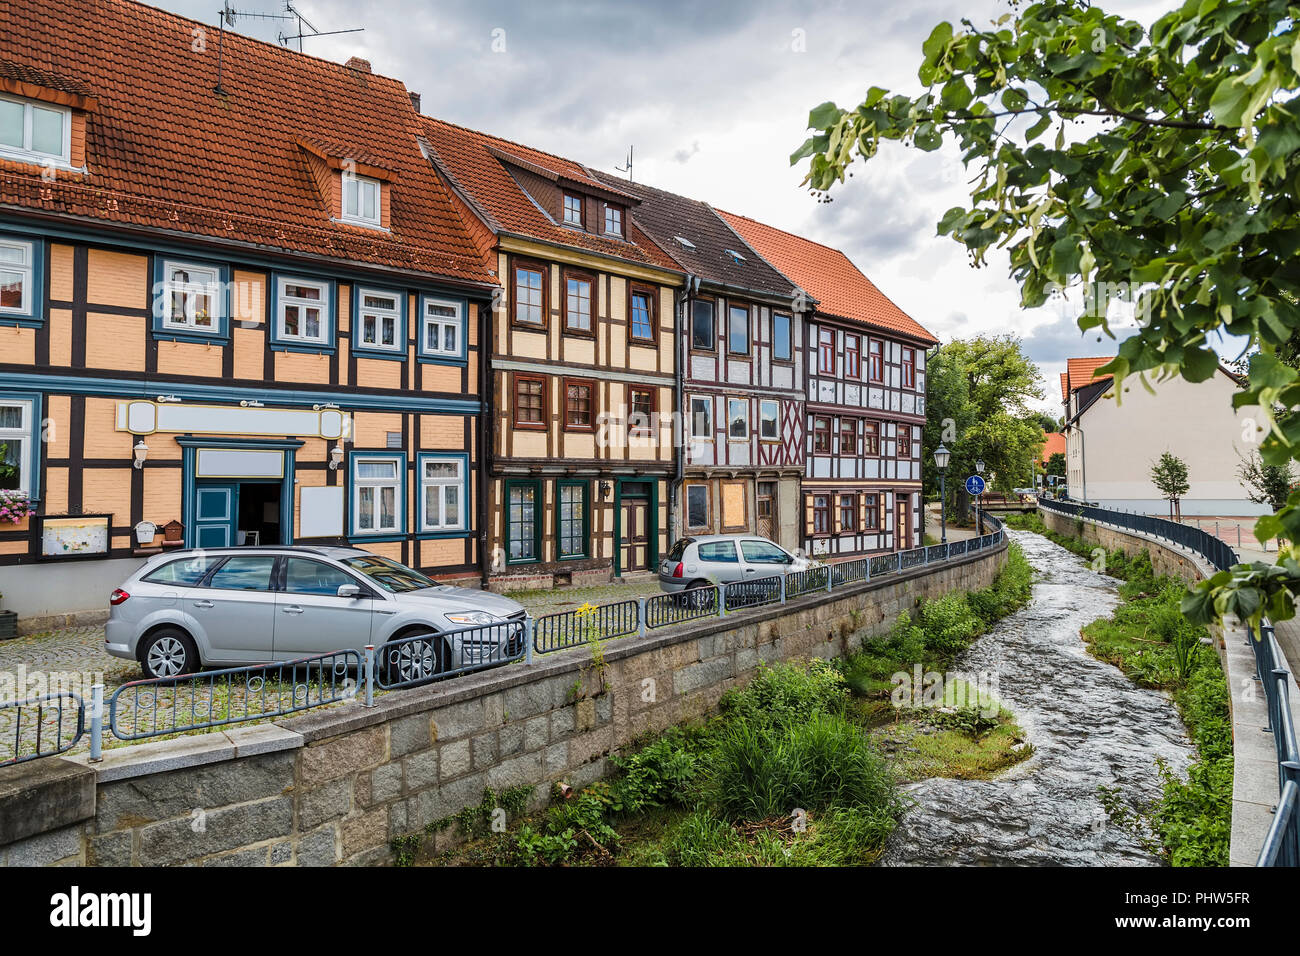 Ein paar alte Fachwerkhäuser am Ufer eines kleinen Flusses in einer kleinen Stadt in Deutschland Stockfoto